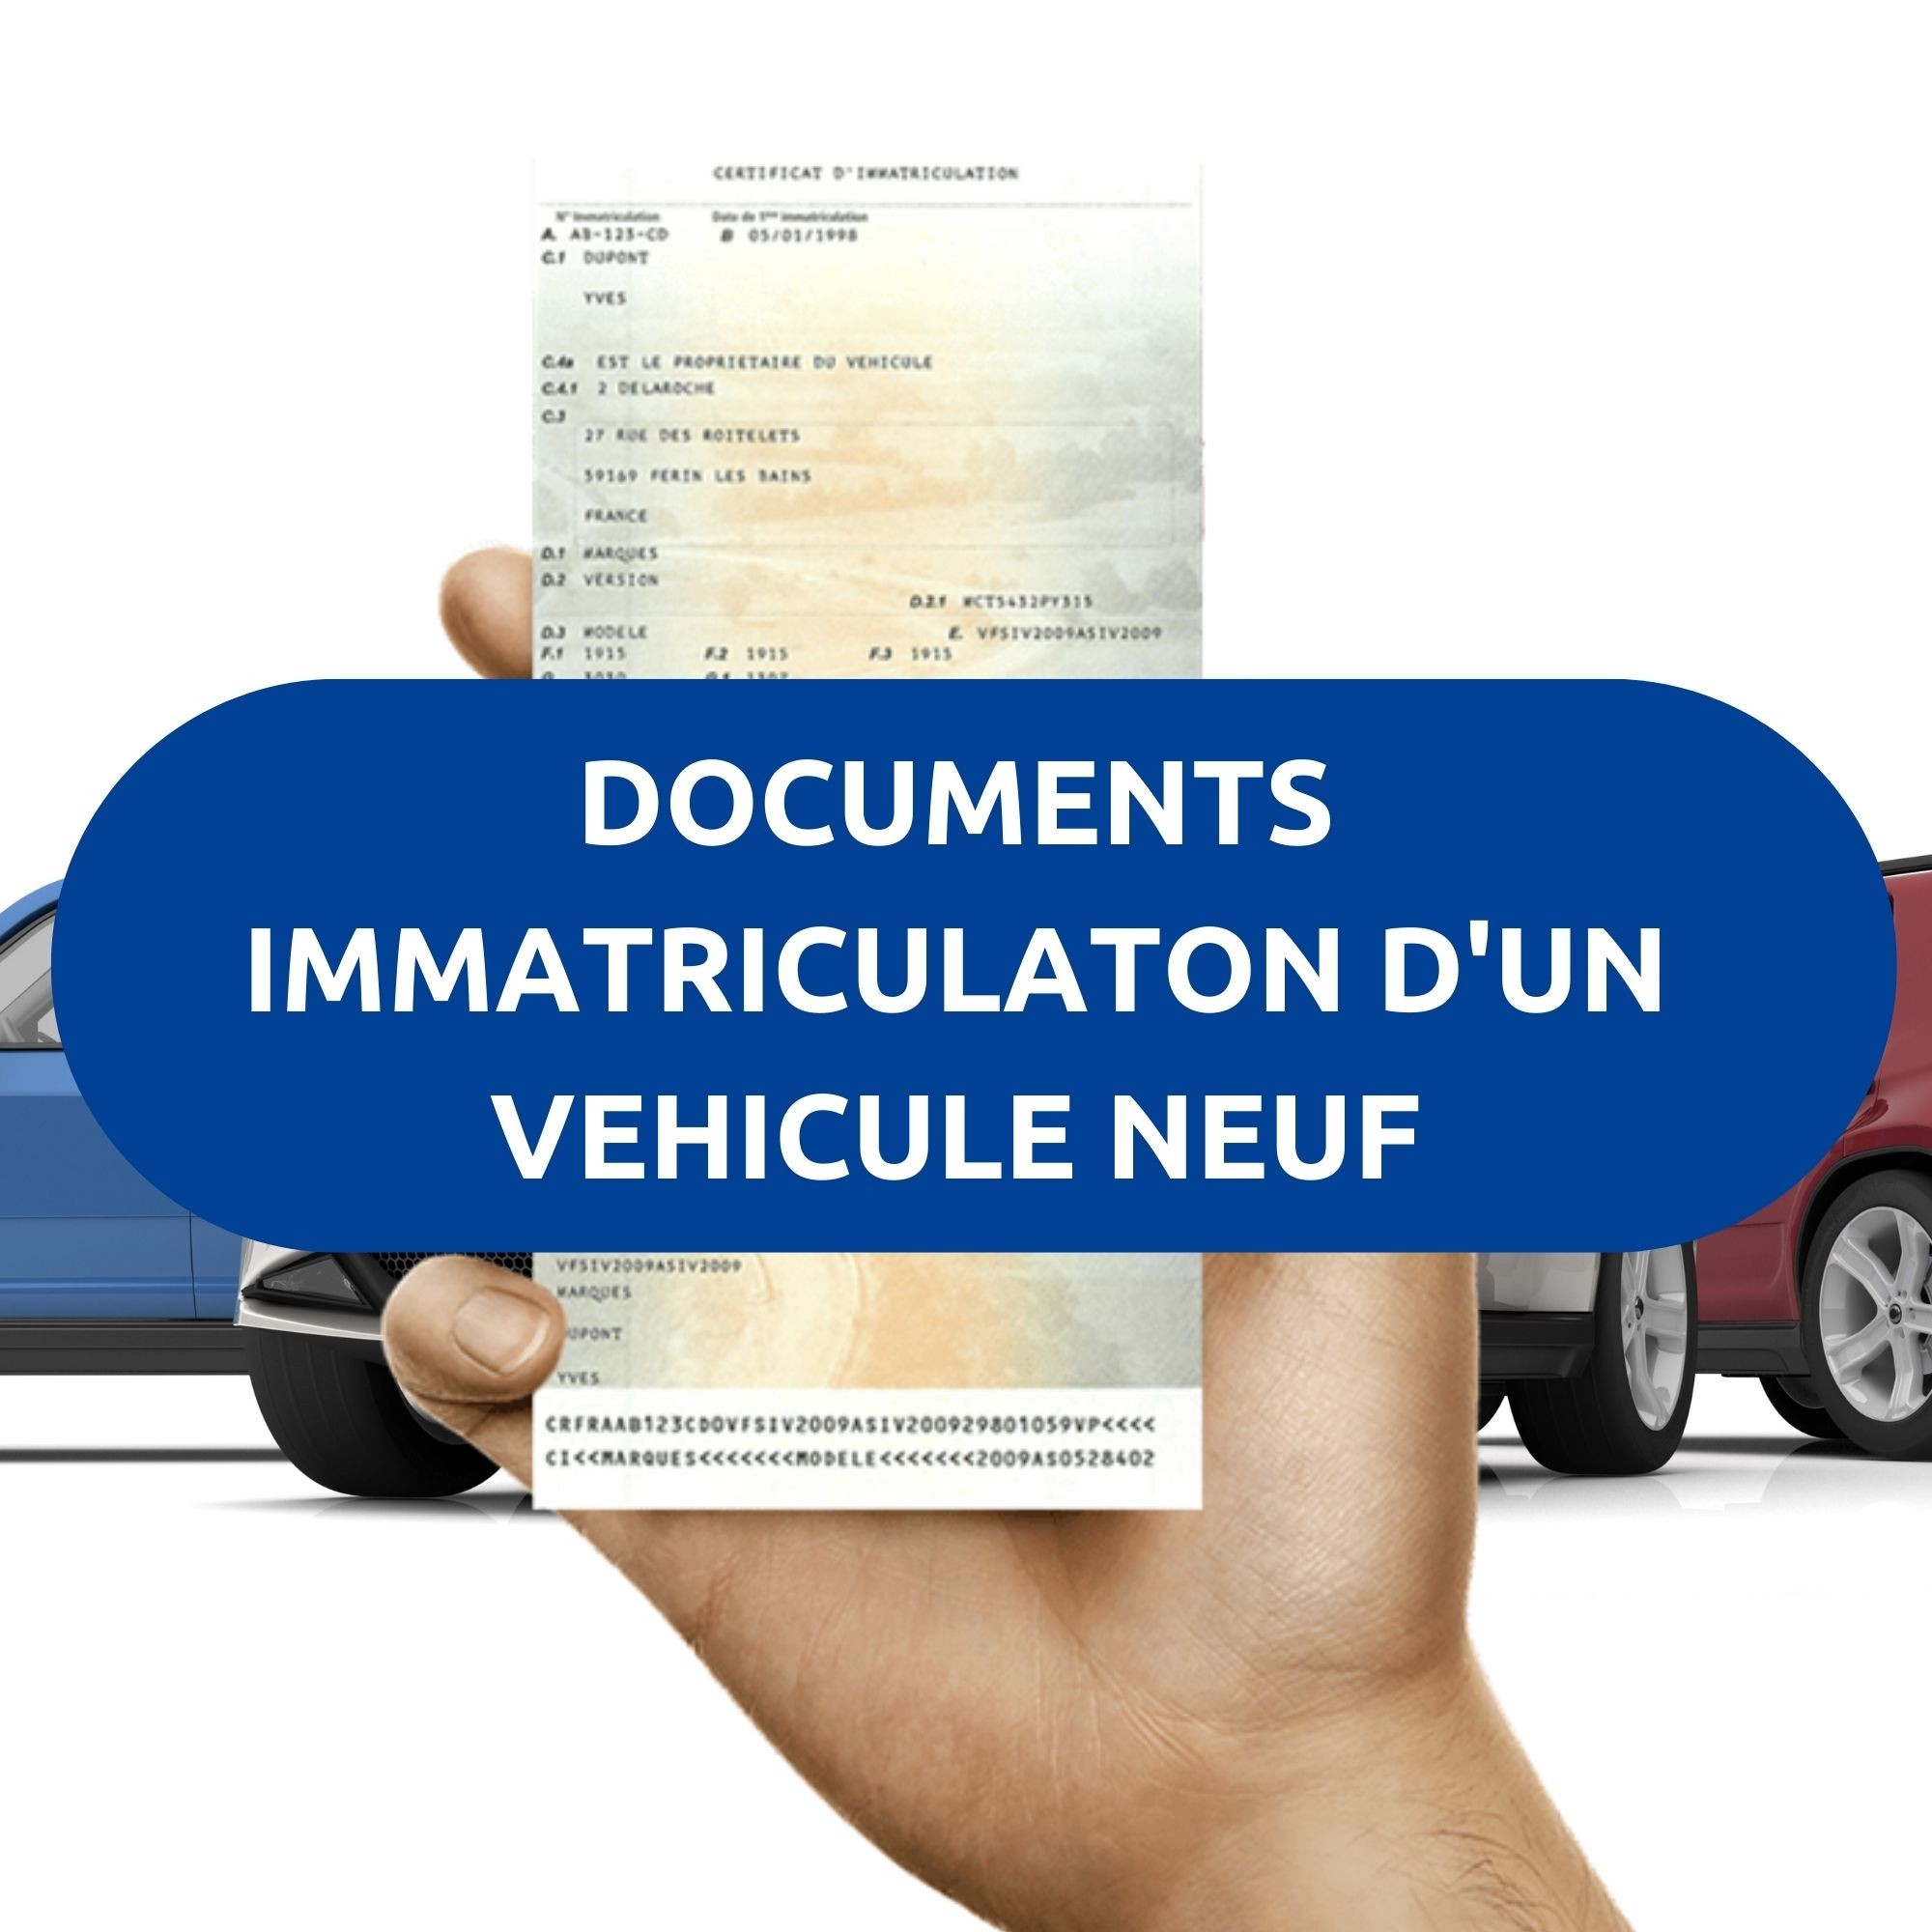 Documents immatriculation d'un véhicule neuf